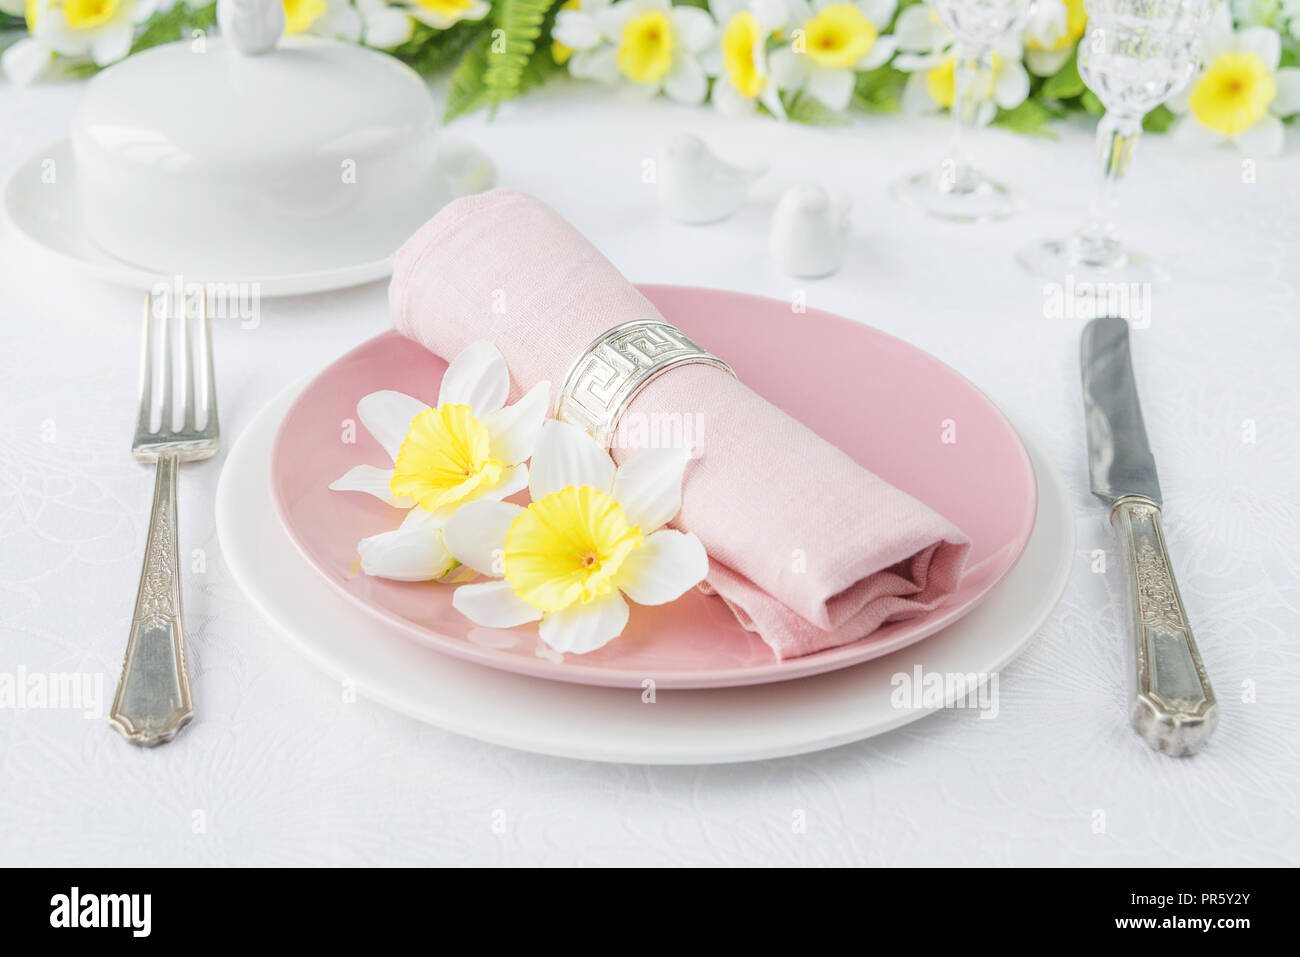 Klassische dienen für eine Ostern Abendessen mit weißen und rosa Porzellan Teller, Besteck und Frühling Blumen auf einem weißen Tischtuch Stockfoto